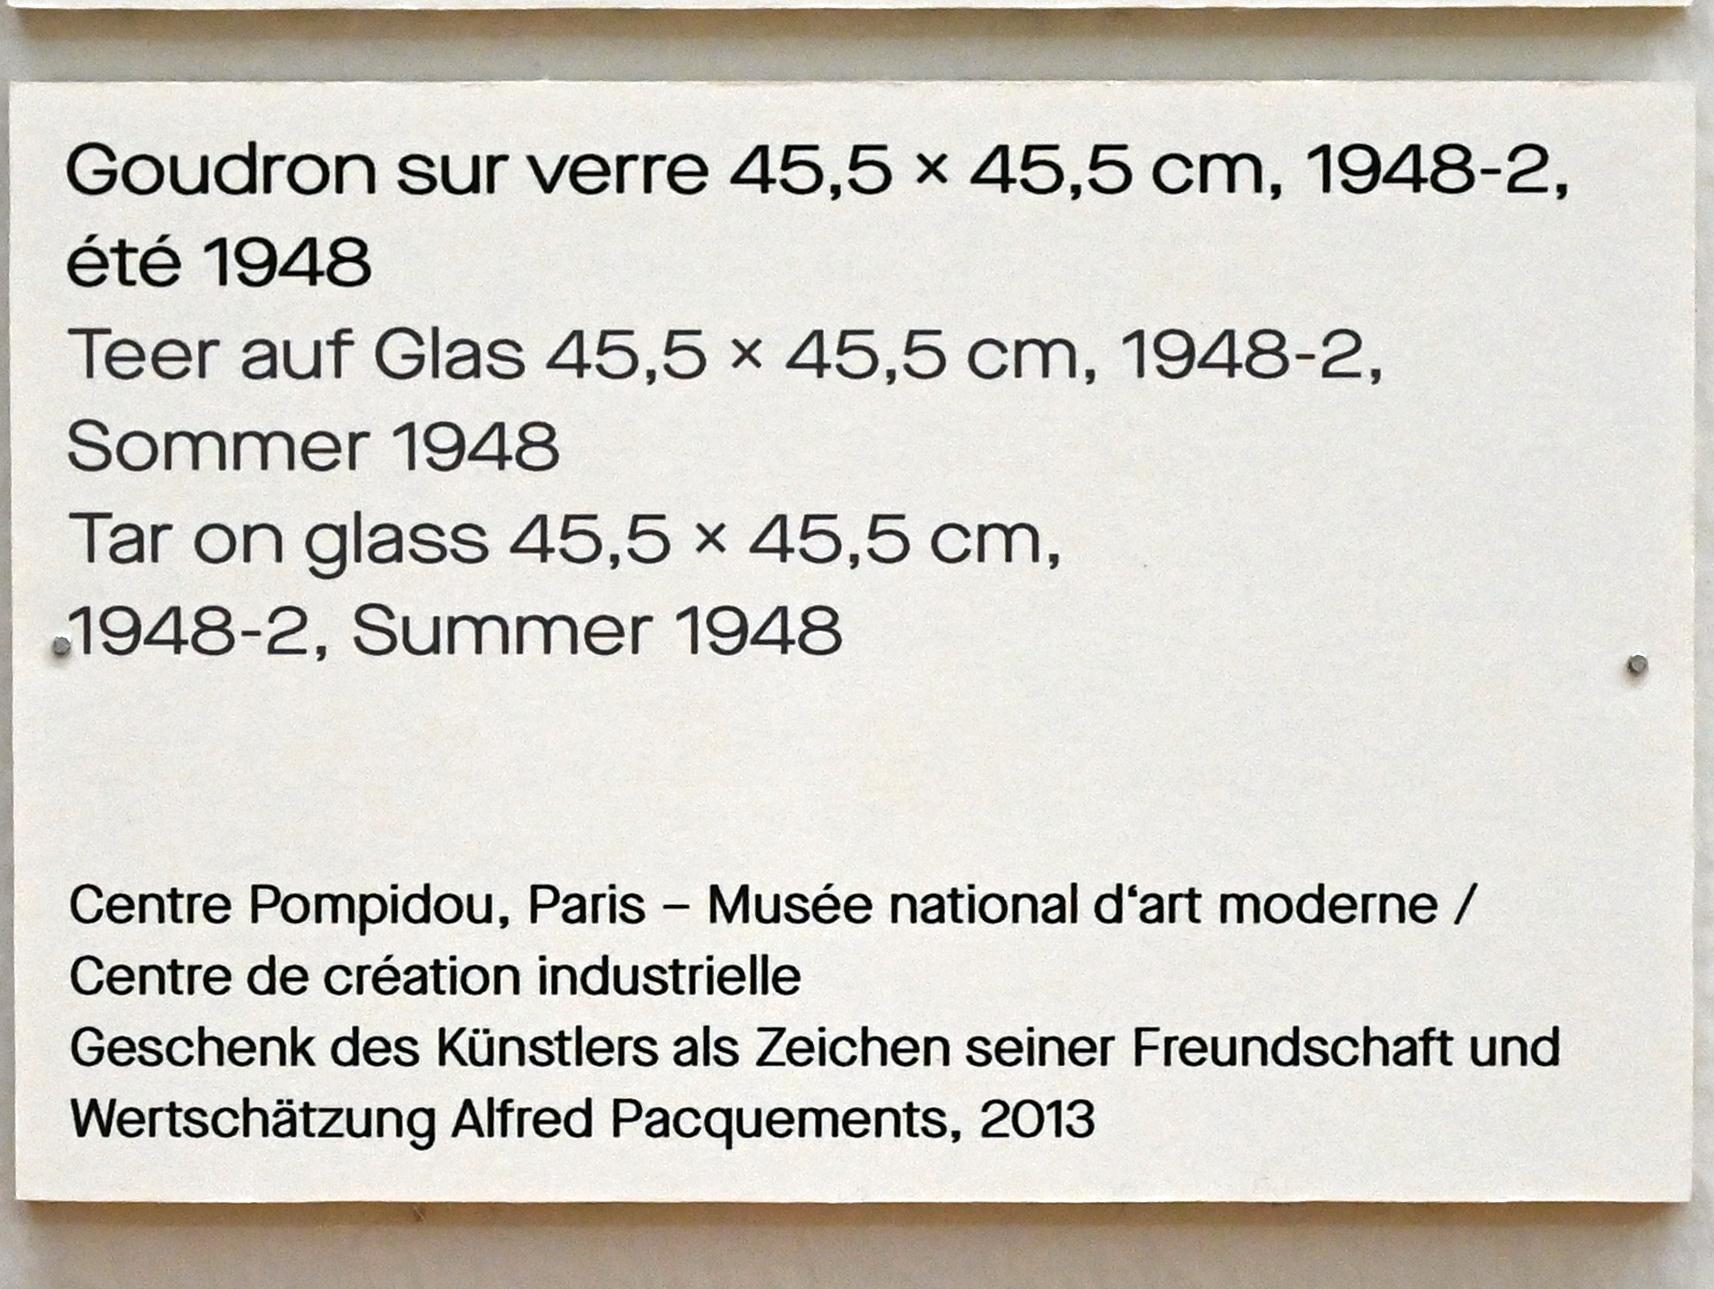 Pierre Soulages (1946–2019), Teer auf Glas 45,5 x 45,5 cm, 1948-2, Chemnitz, Kunstsammlungen am Theaterplatz, Ausstellung "Soulages" vom 28.03.-25.07.2021, Saal 3, 1948, Bild 2/2